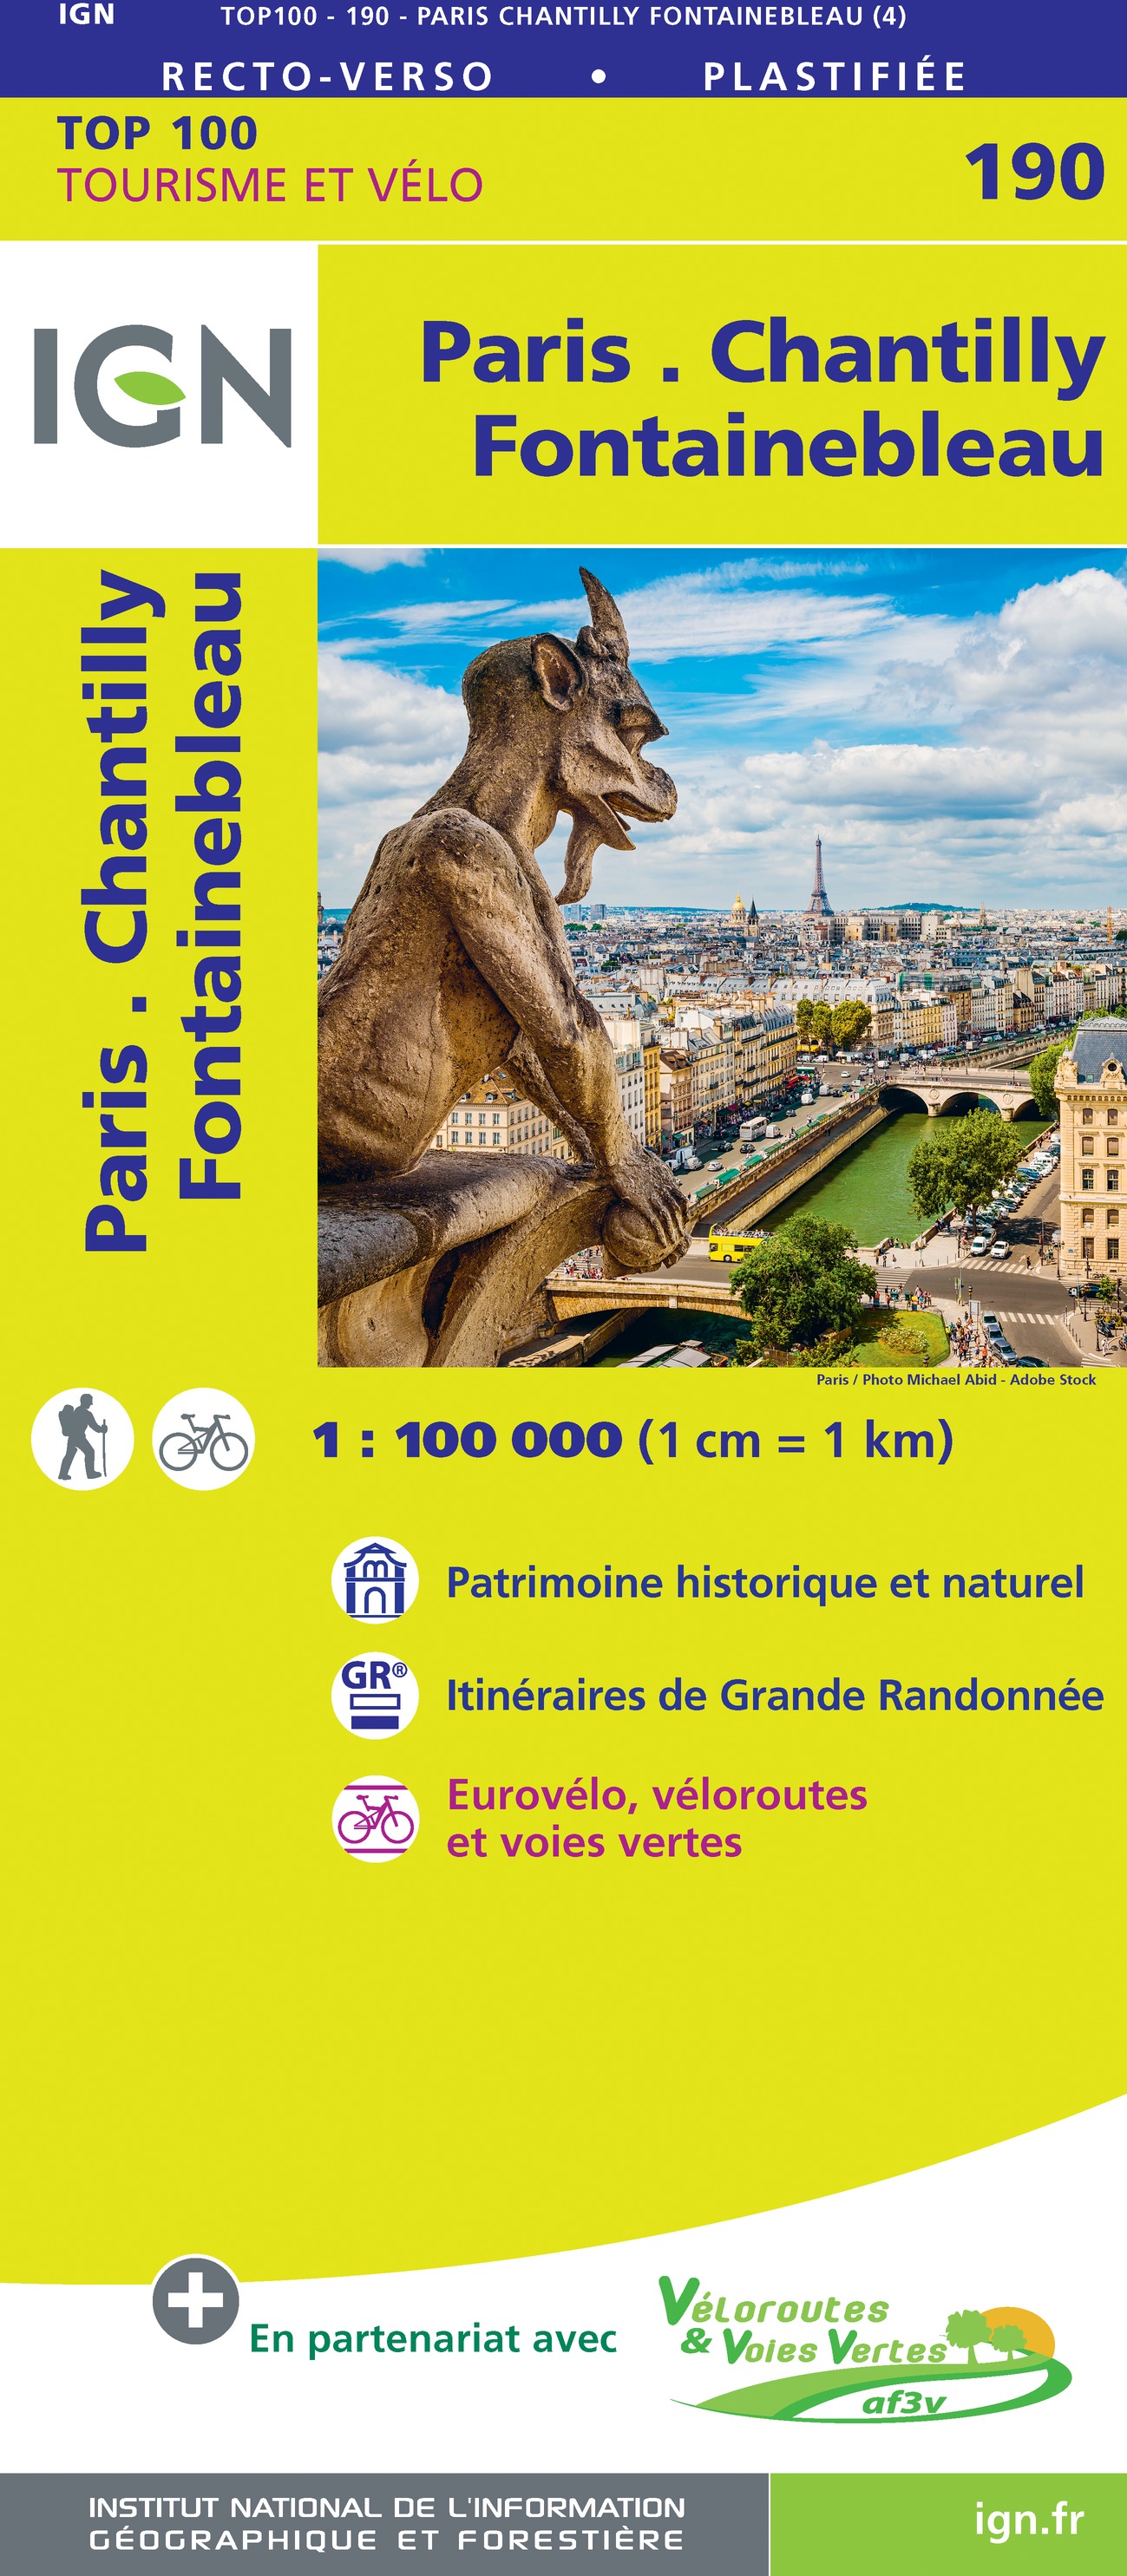 Online bestellen: Fietskaart - Wegenkaart - landkaart 190 Paris - Chantilly - Fontainebleau | IGN - Institut Géographique National